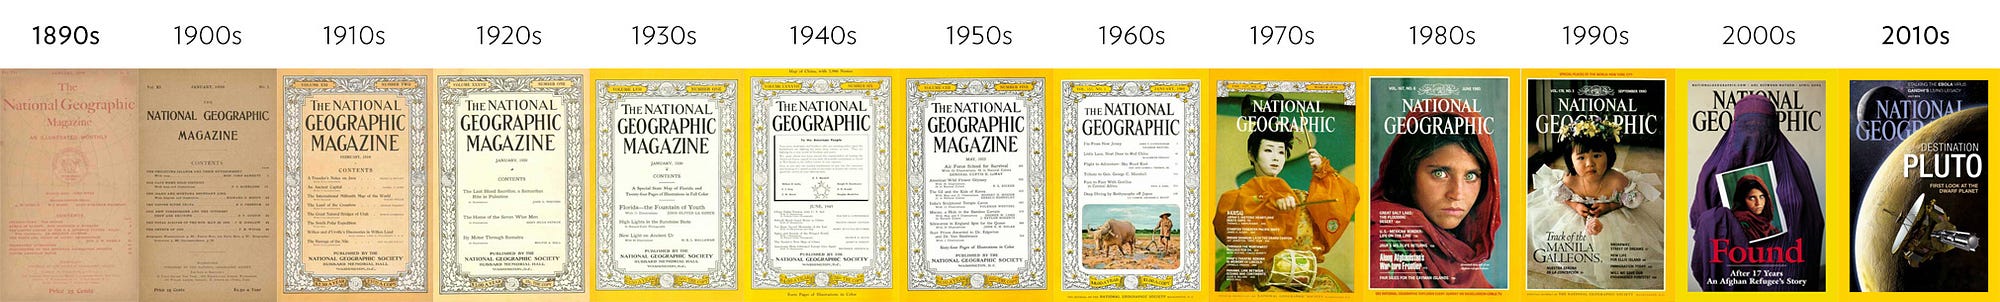 National Geografic - Evolução